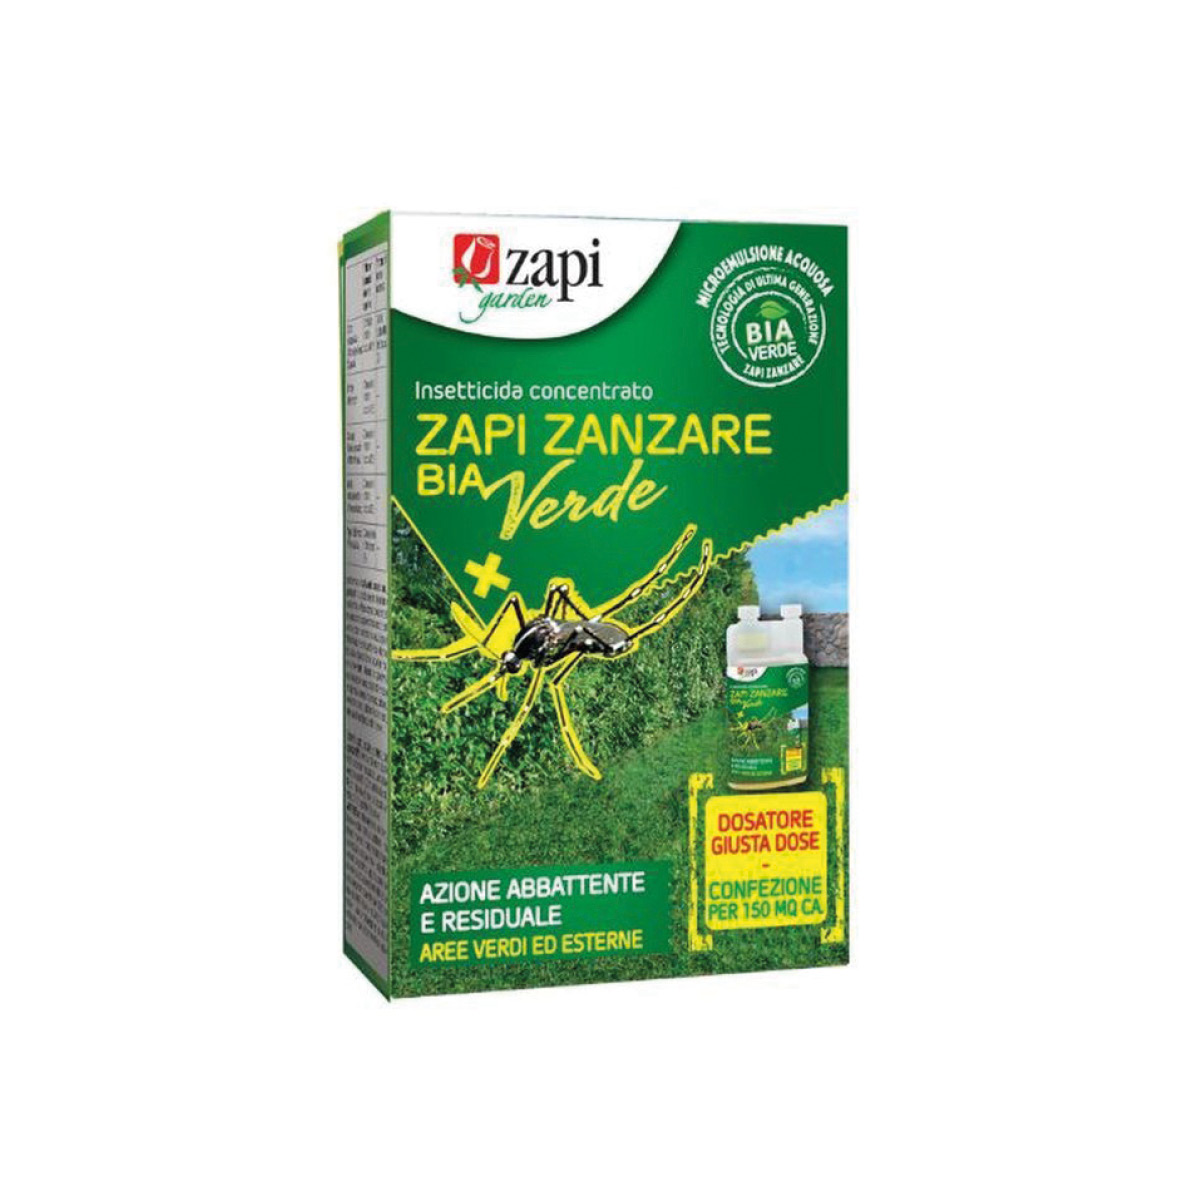 Zapi Zanzare Bia Verde insetticida concentrato 250ml